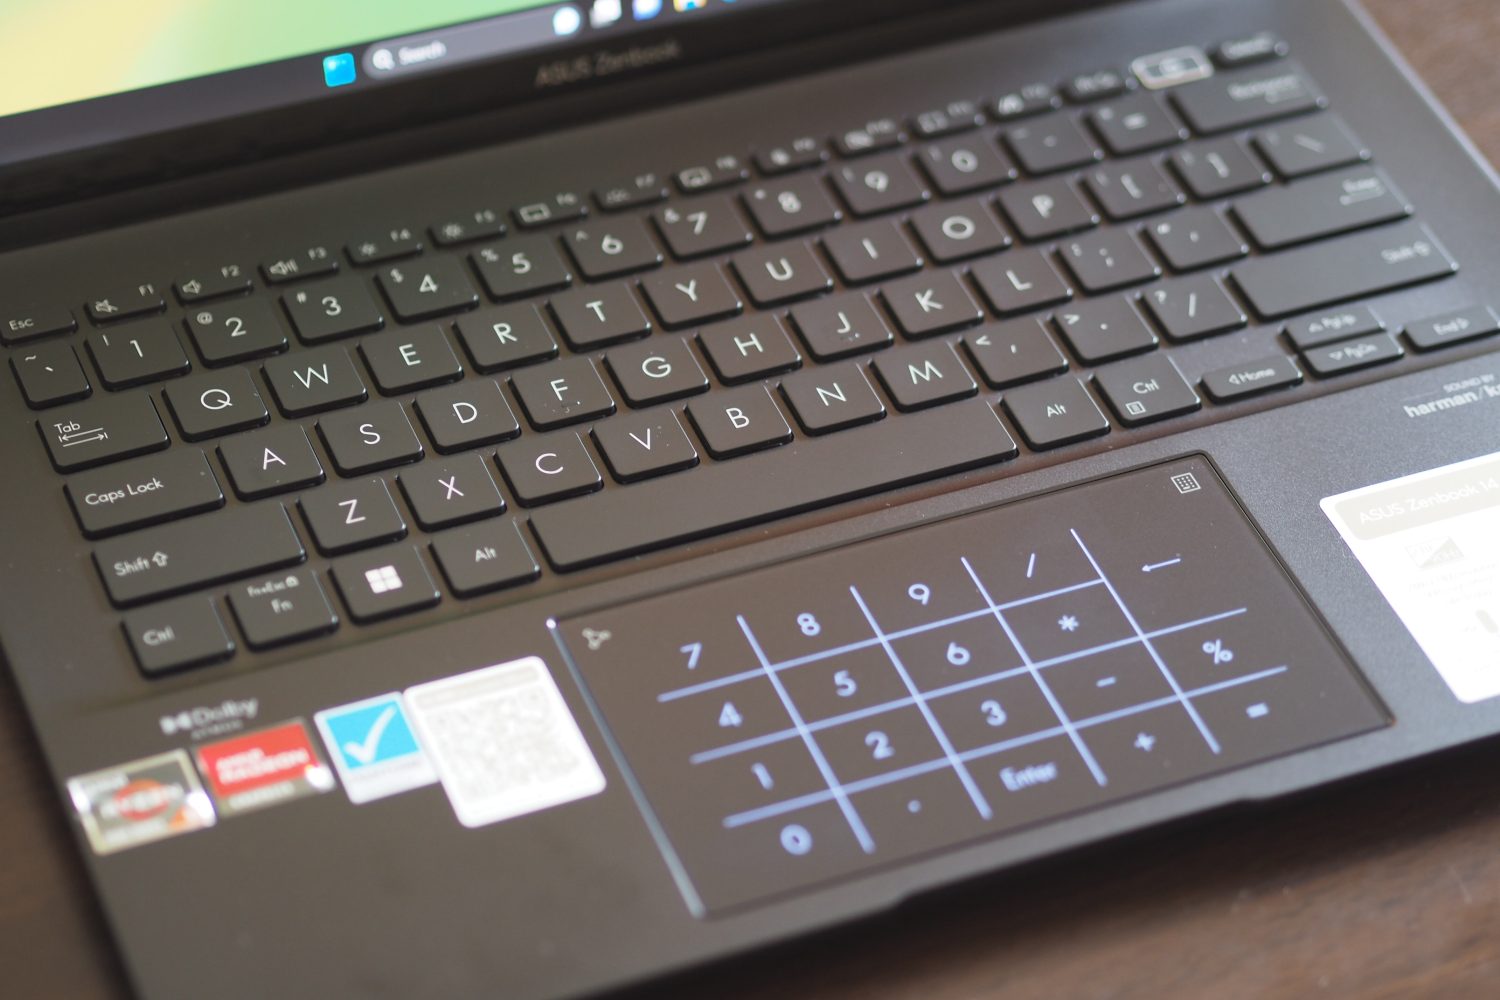 Vista superior do Asus Zenbook 14 OLED mostrando o teclado e o touchpad.